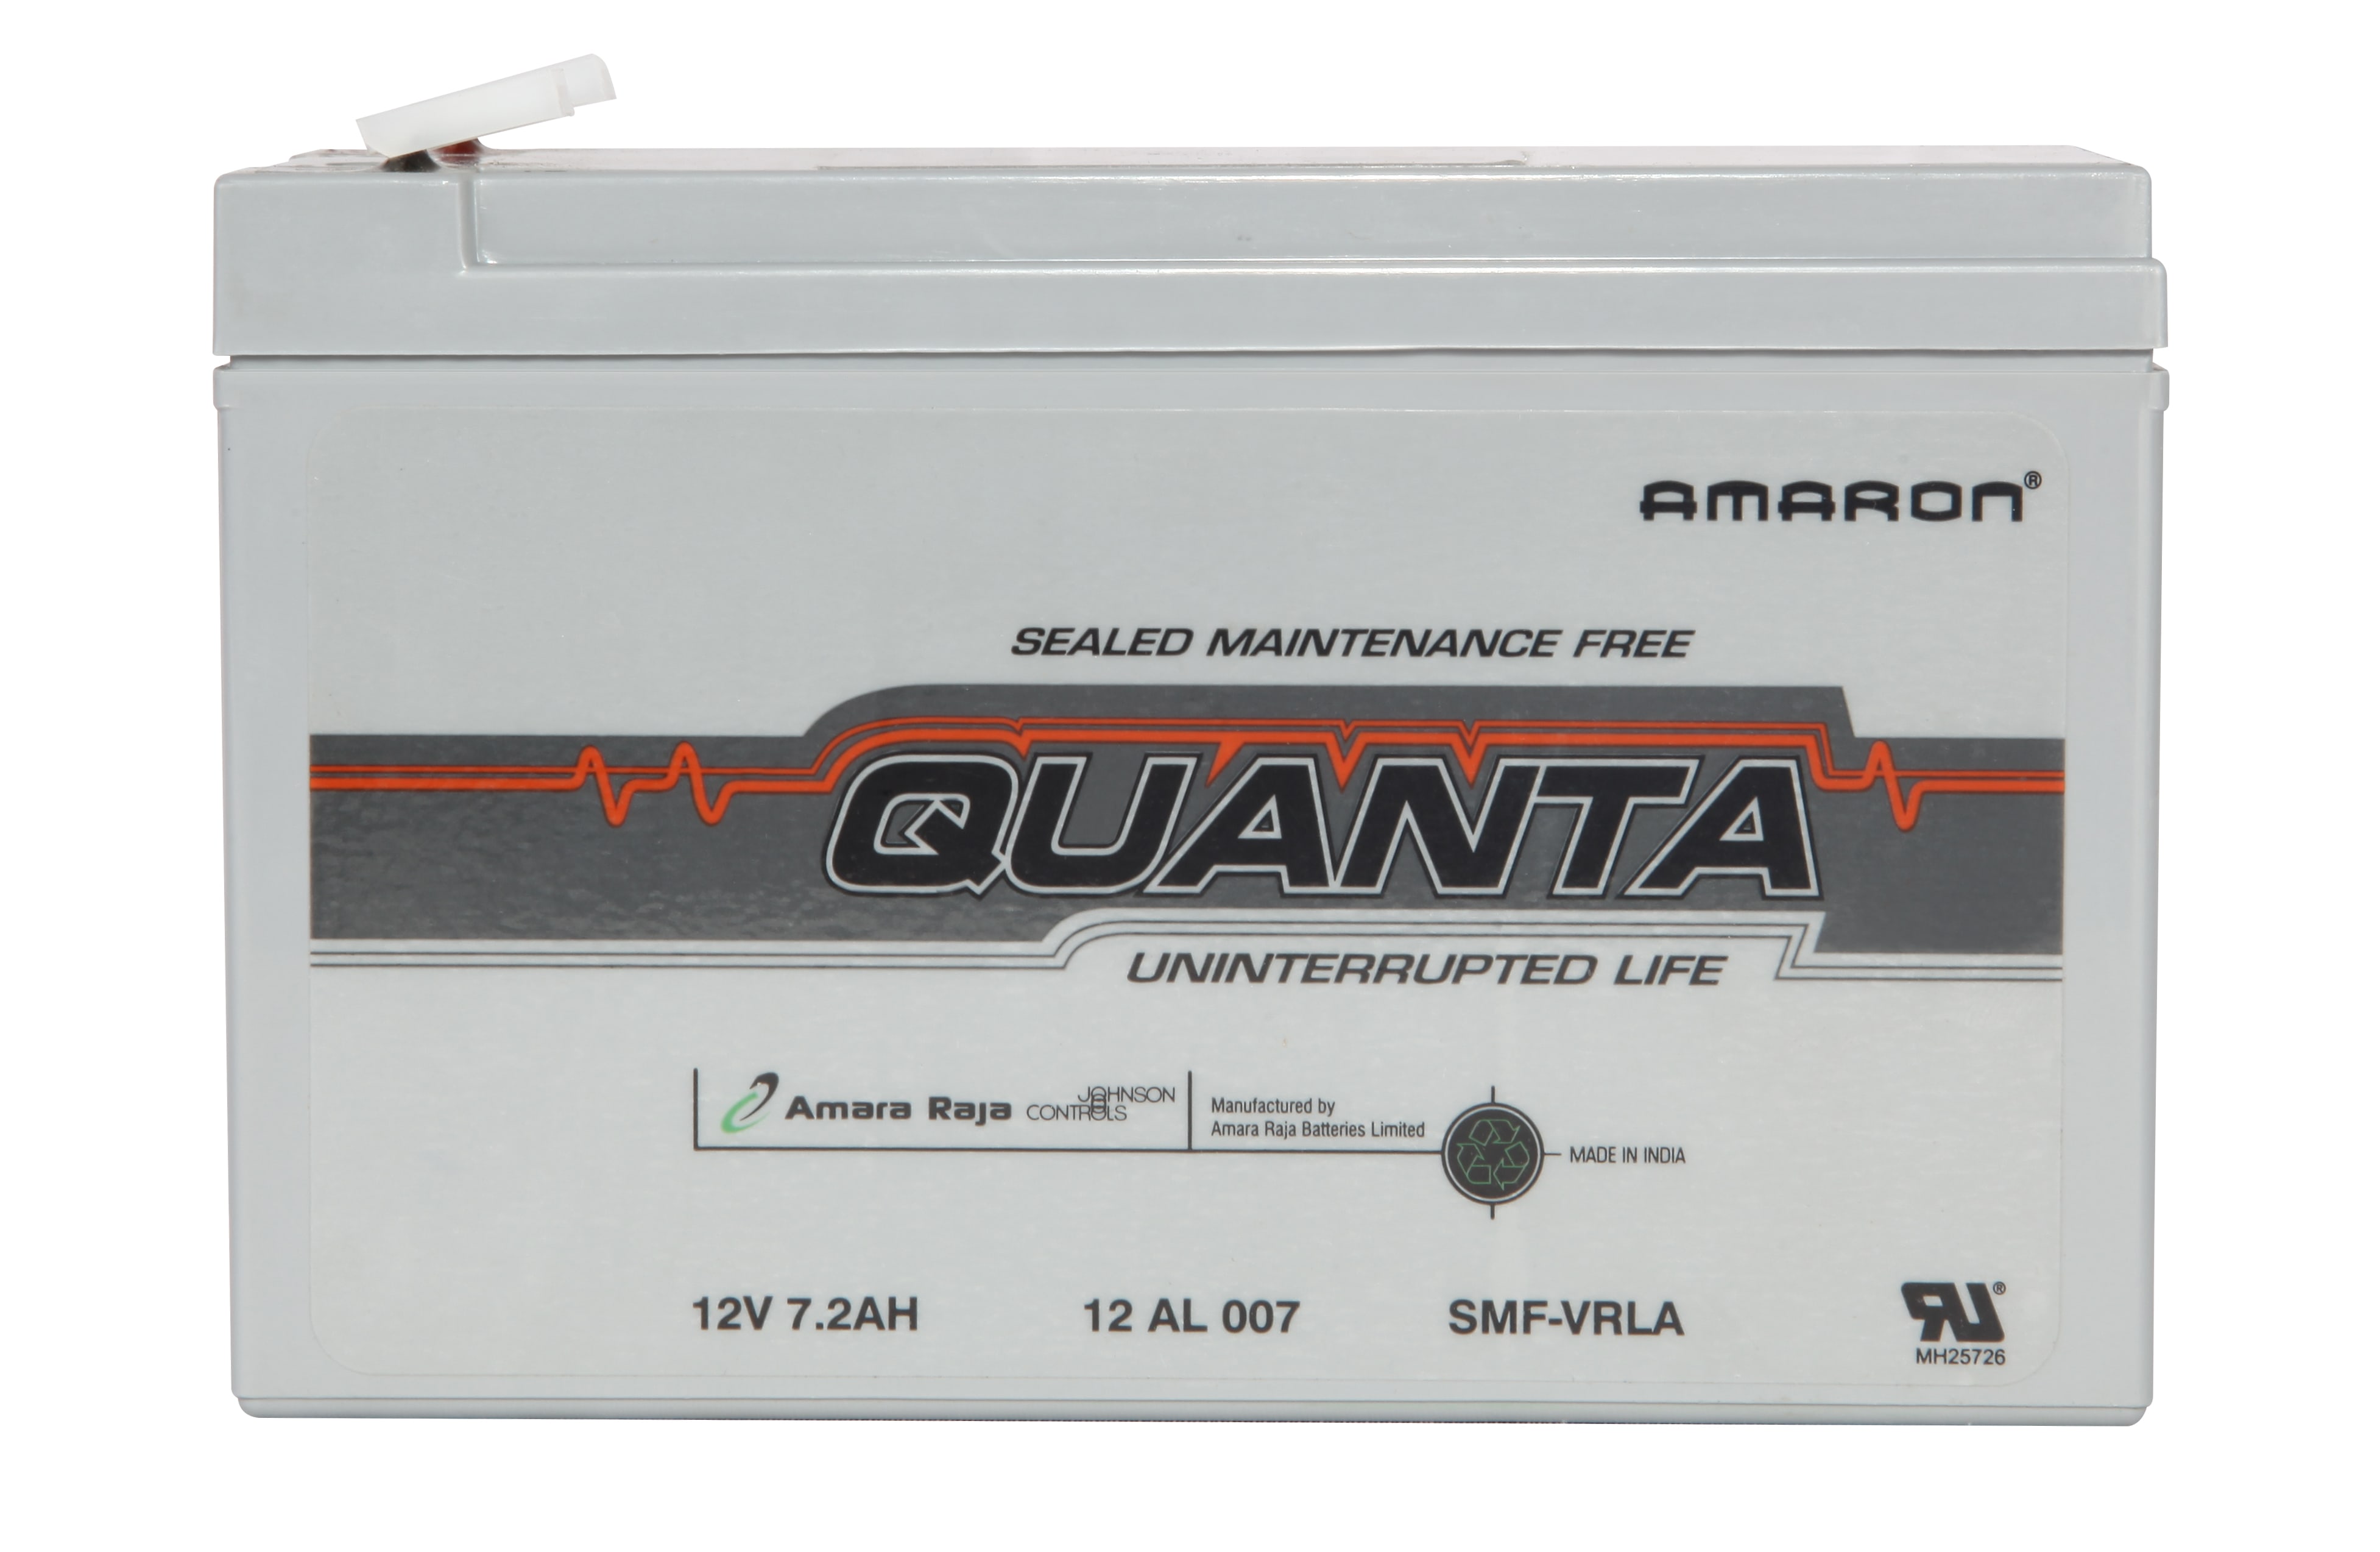 Amaron Quanta Battery, 12 AL 007